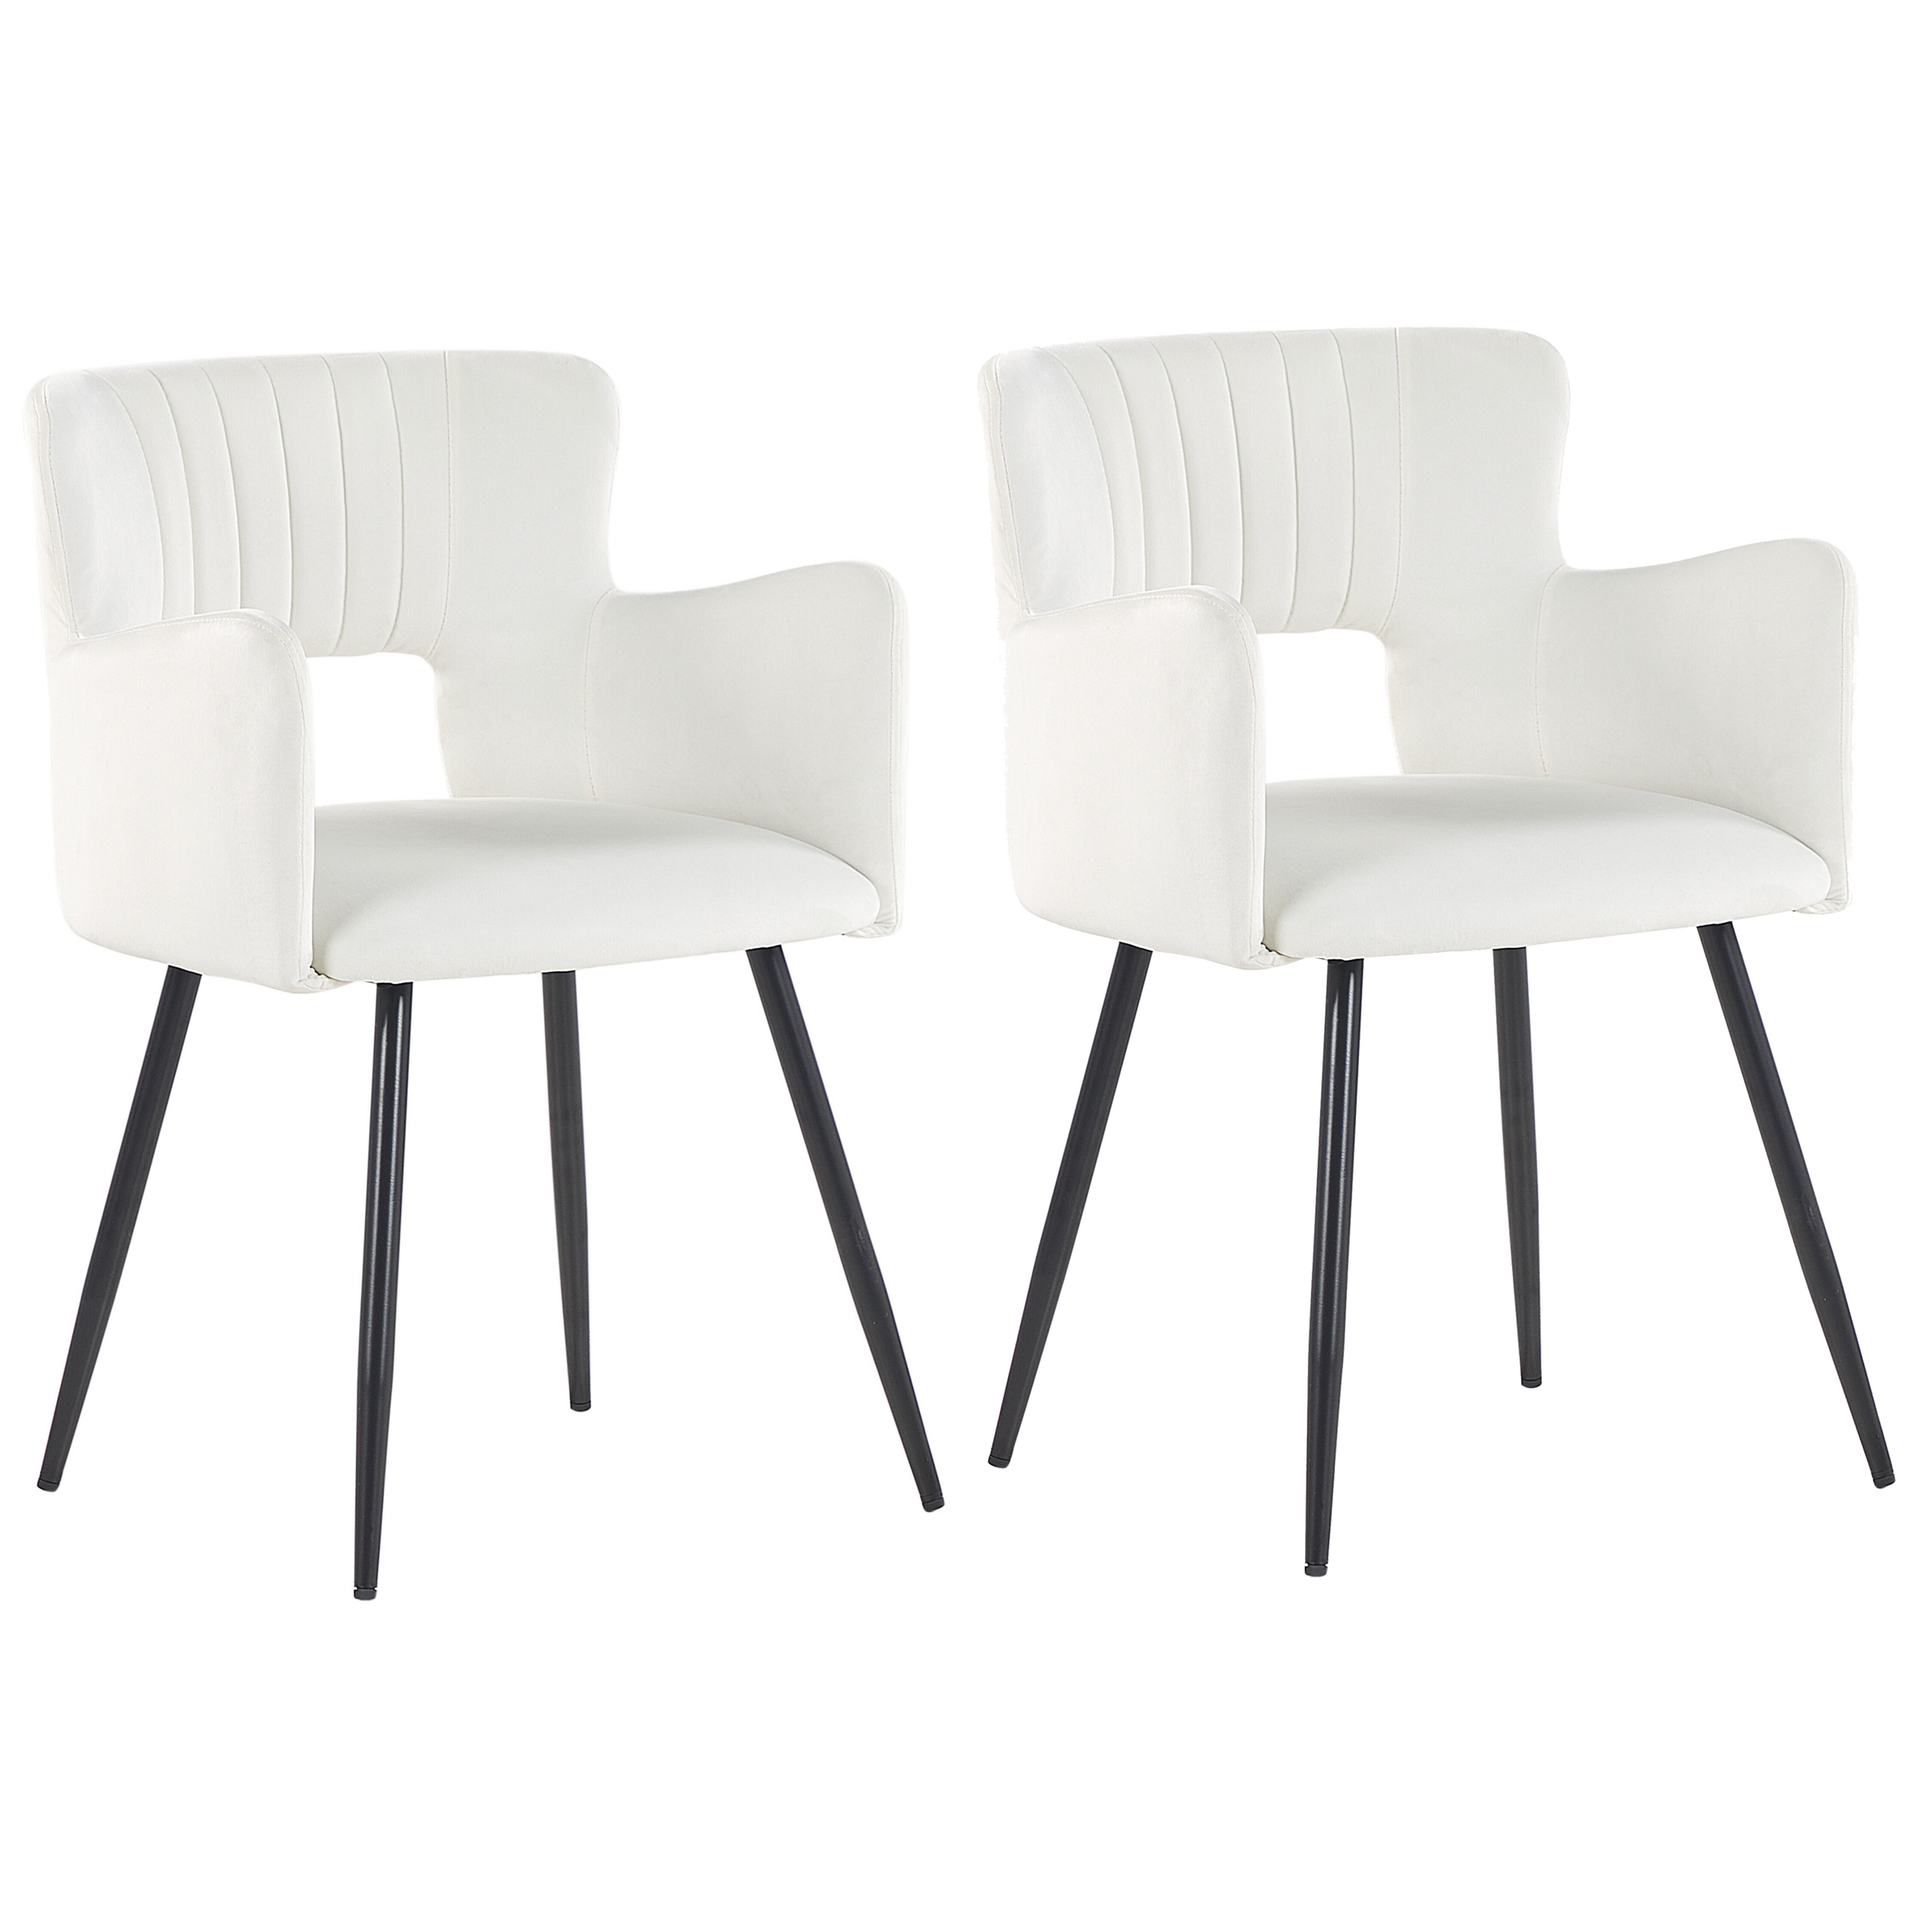 2 krzesła do jadalni welurowe białe SANILAC